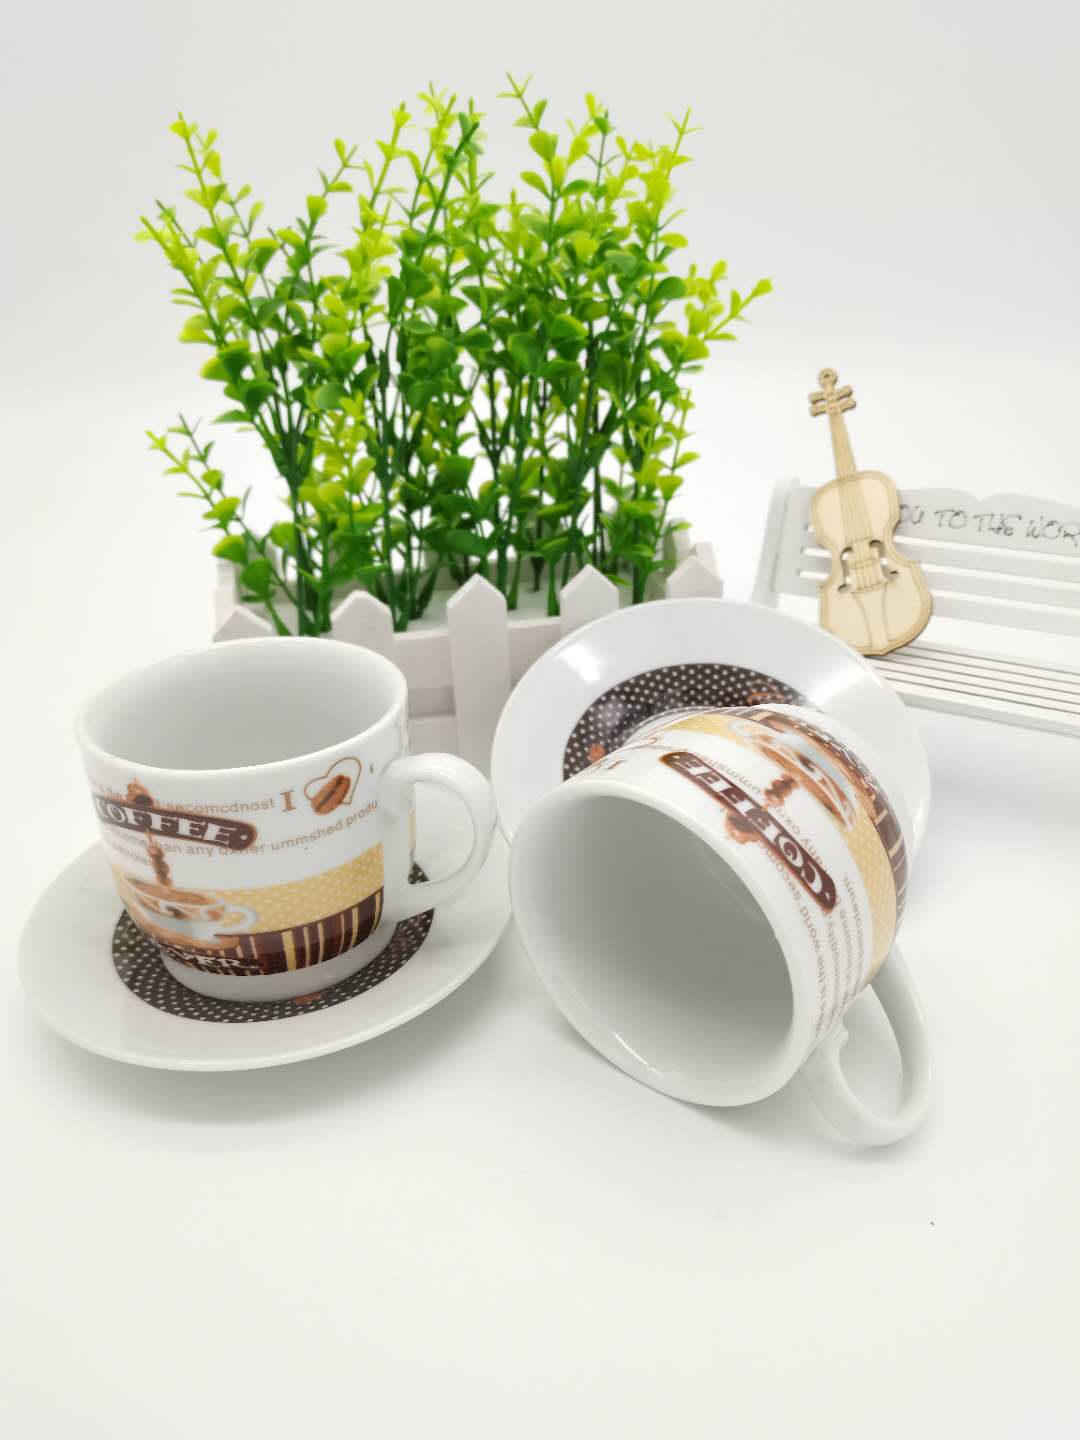 ชุดแก้วกาแฟ ชุดแก้วเซรามิค ชุดชงชา ชุดแก้วชากาแฟ ชุดของขวัญ มีหลายลวดลายให้เลือก ขนาดจาน 12cm ขนาดแก้ว 7x6cm มี2ชุดต่อกล่อง